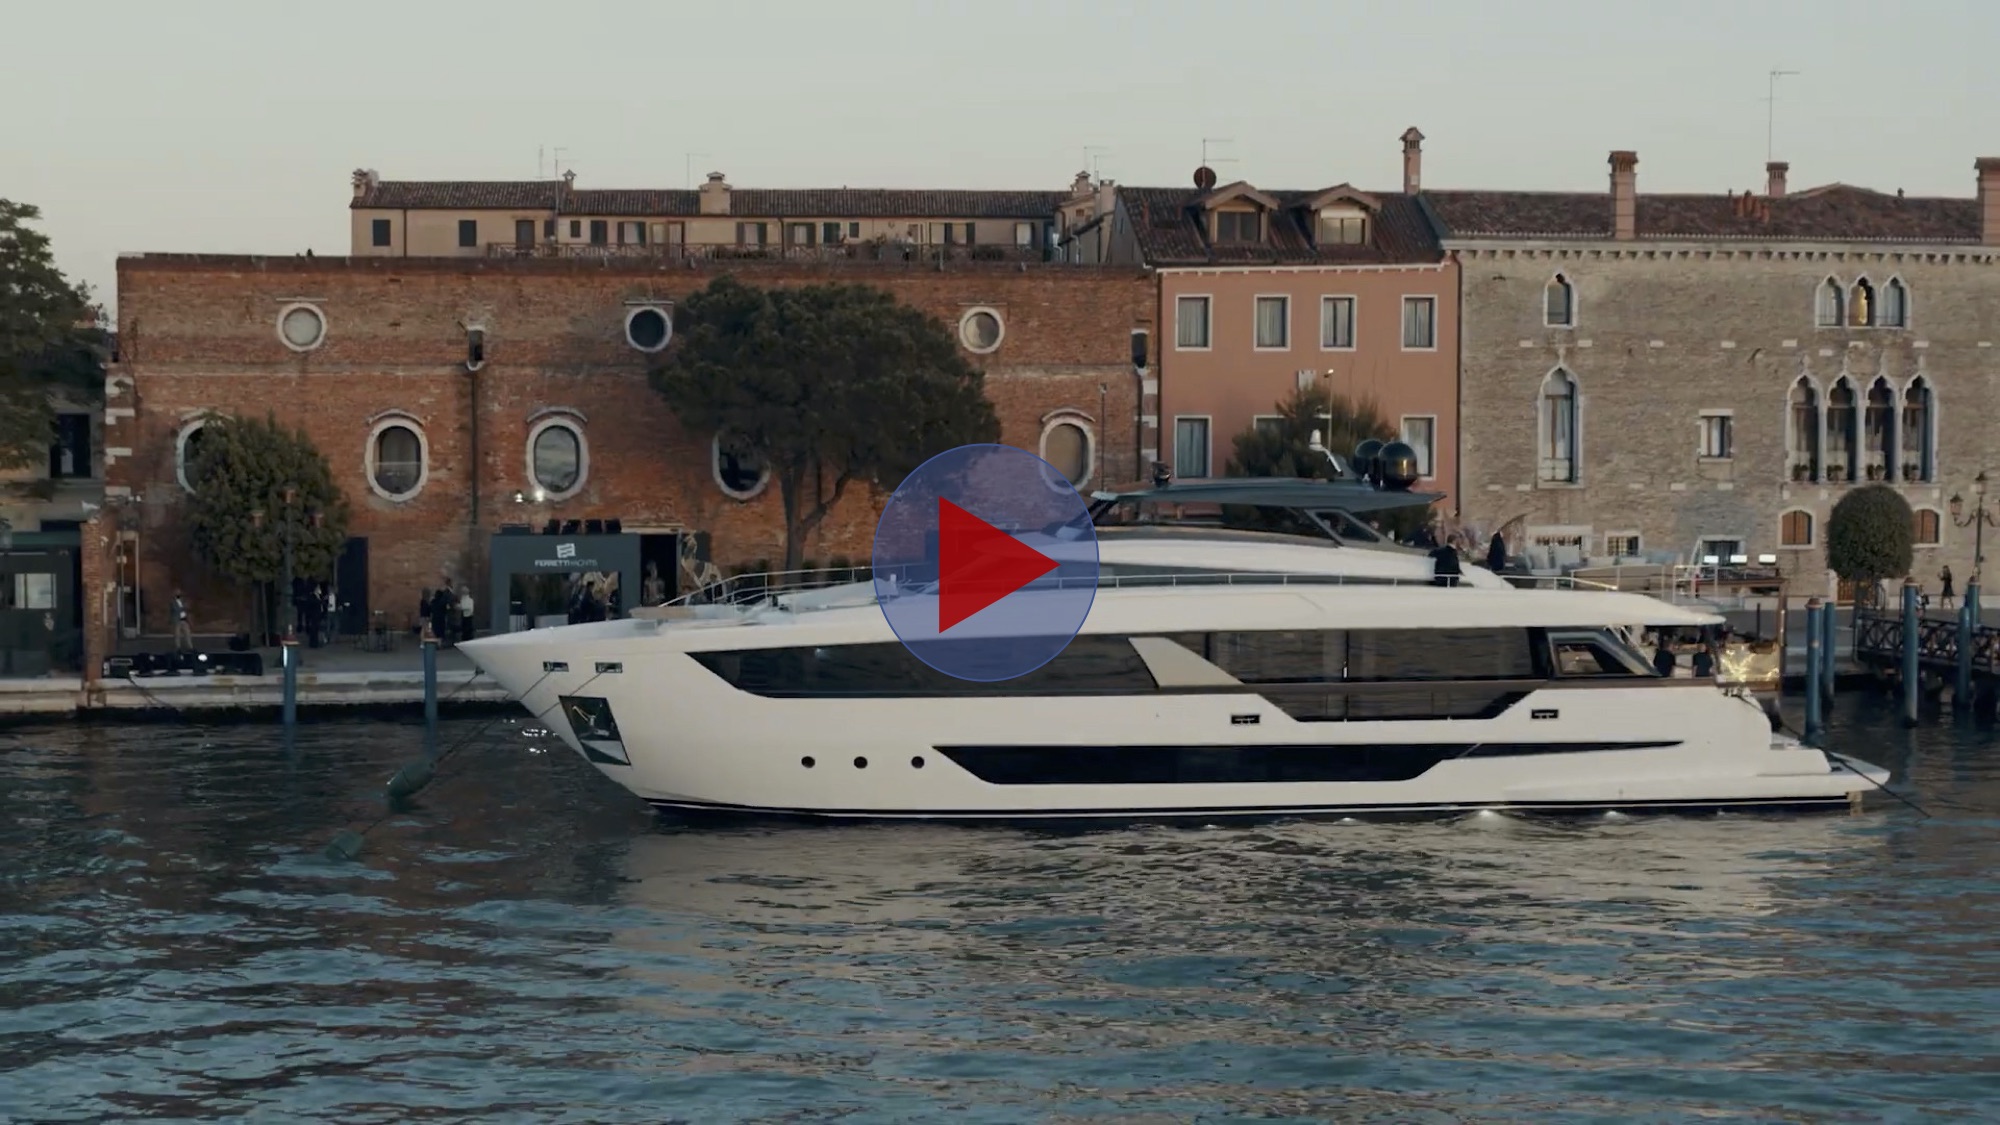 Luxury Flybridge Yacht - Ferretti Yachts 1000 Premiere in Venice. image